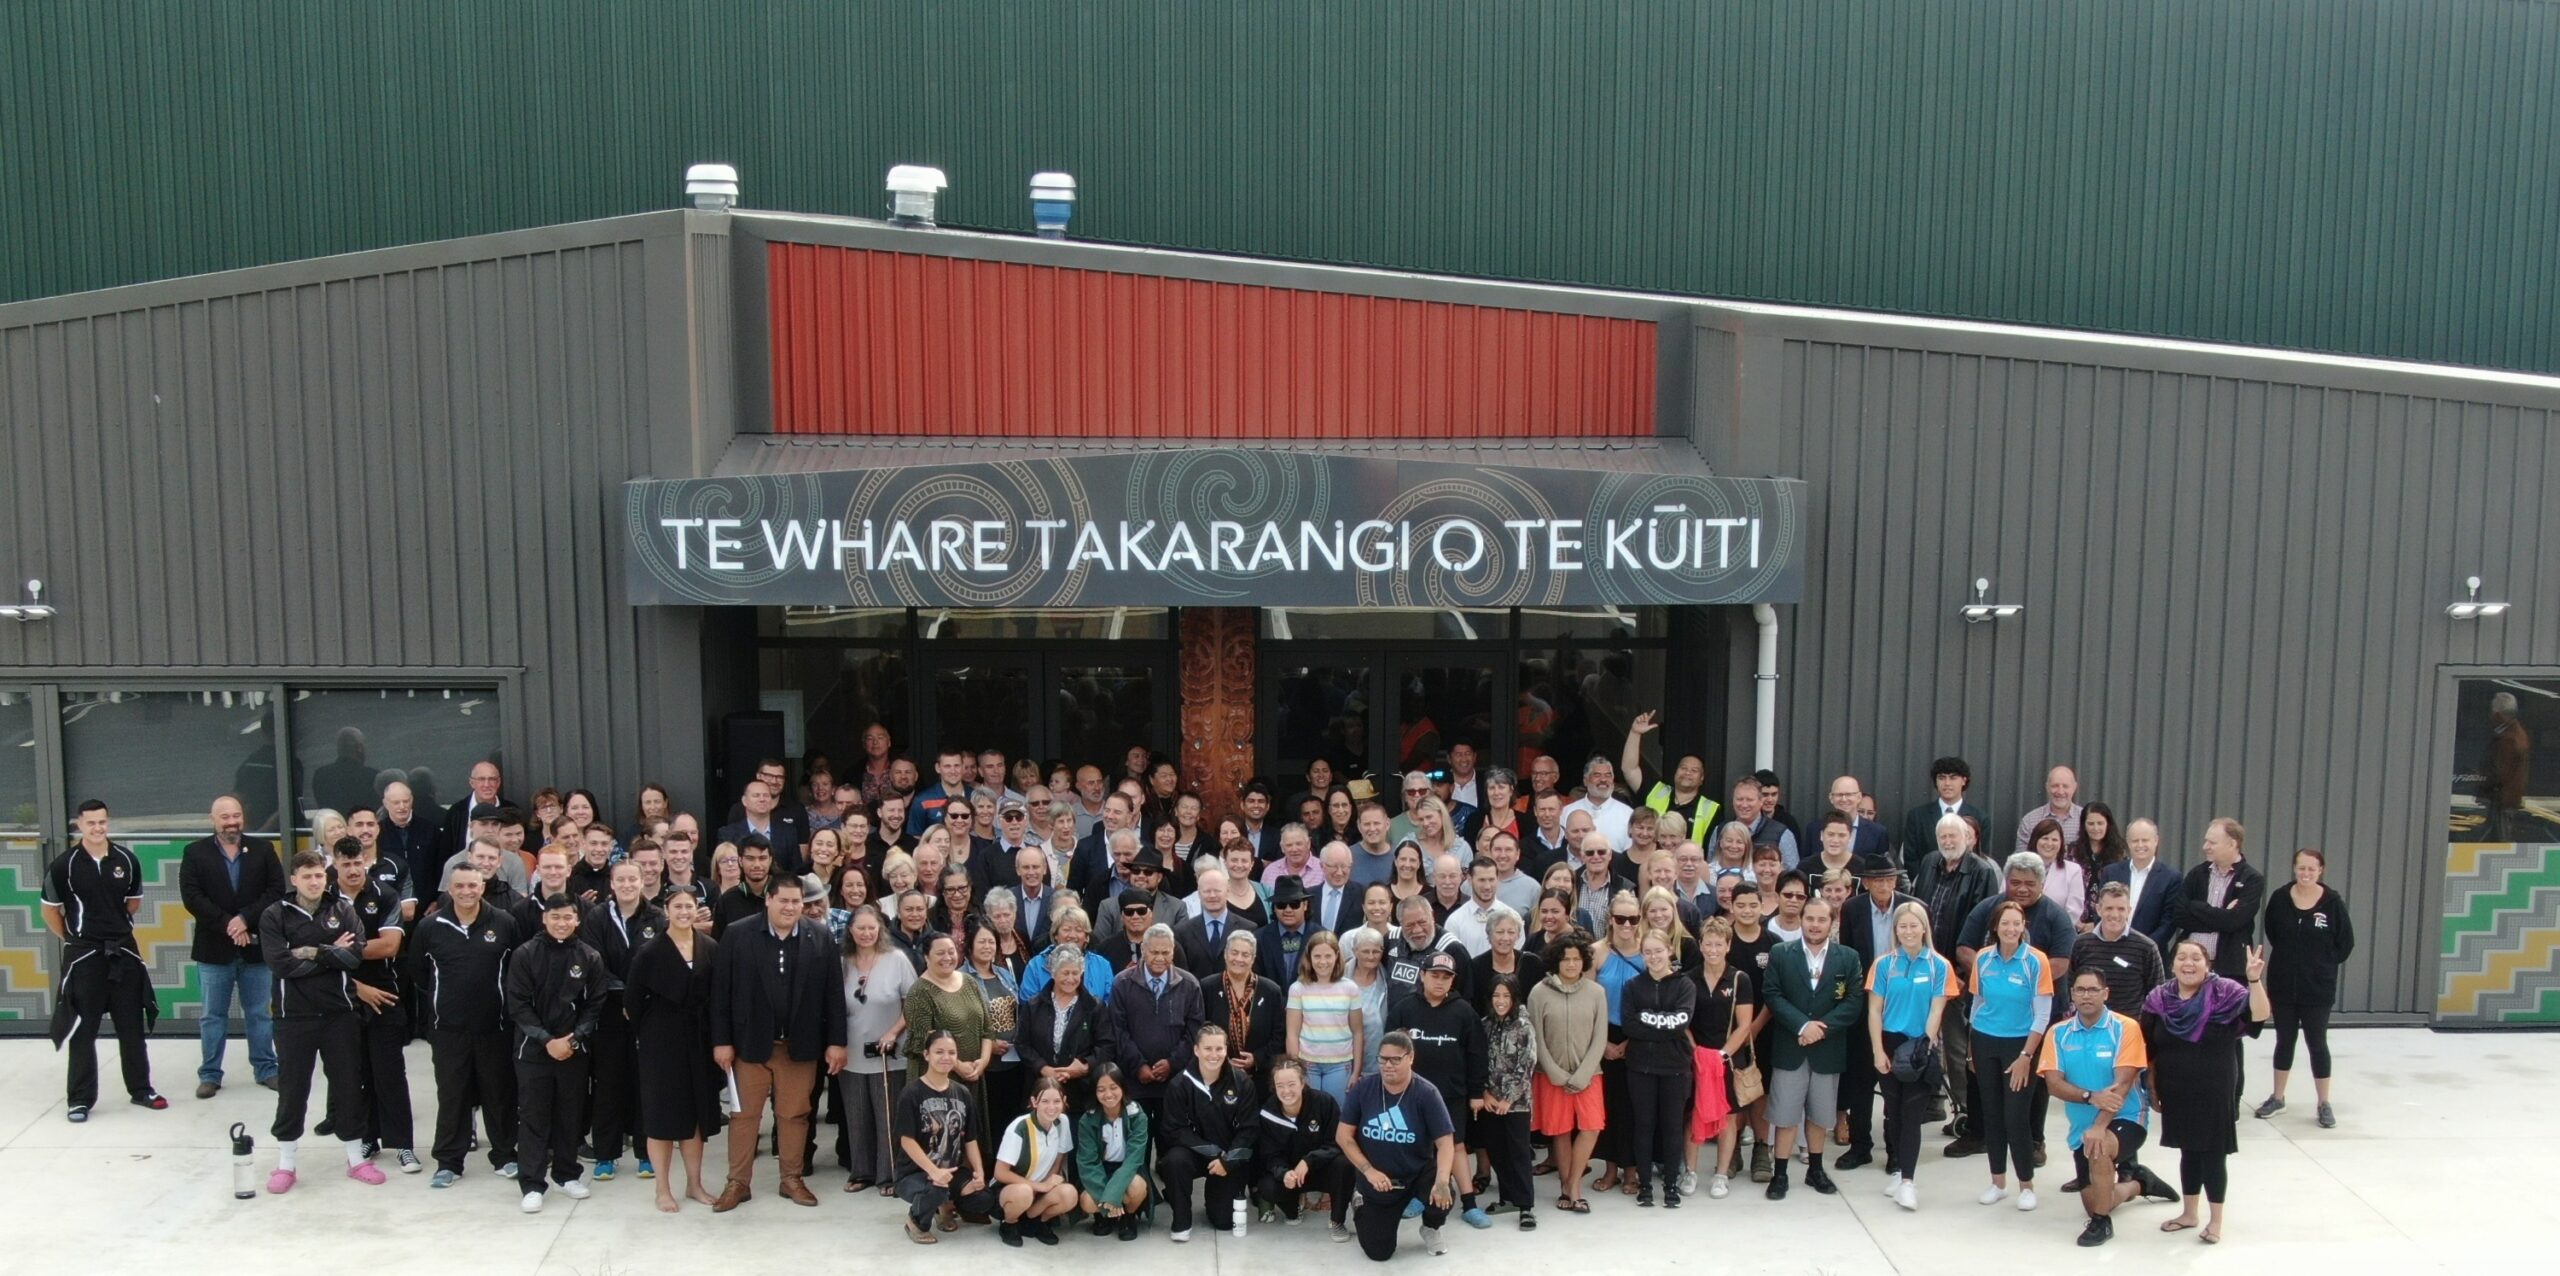 Group of people standing outside the newly opened Te Whare Takarangi o Te Kuuiti.